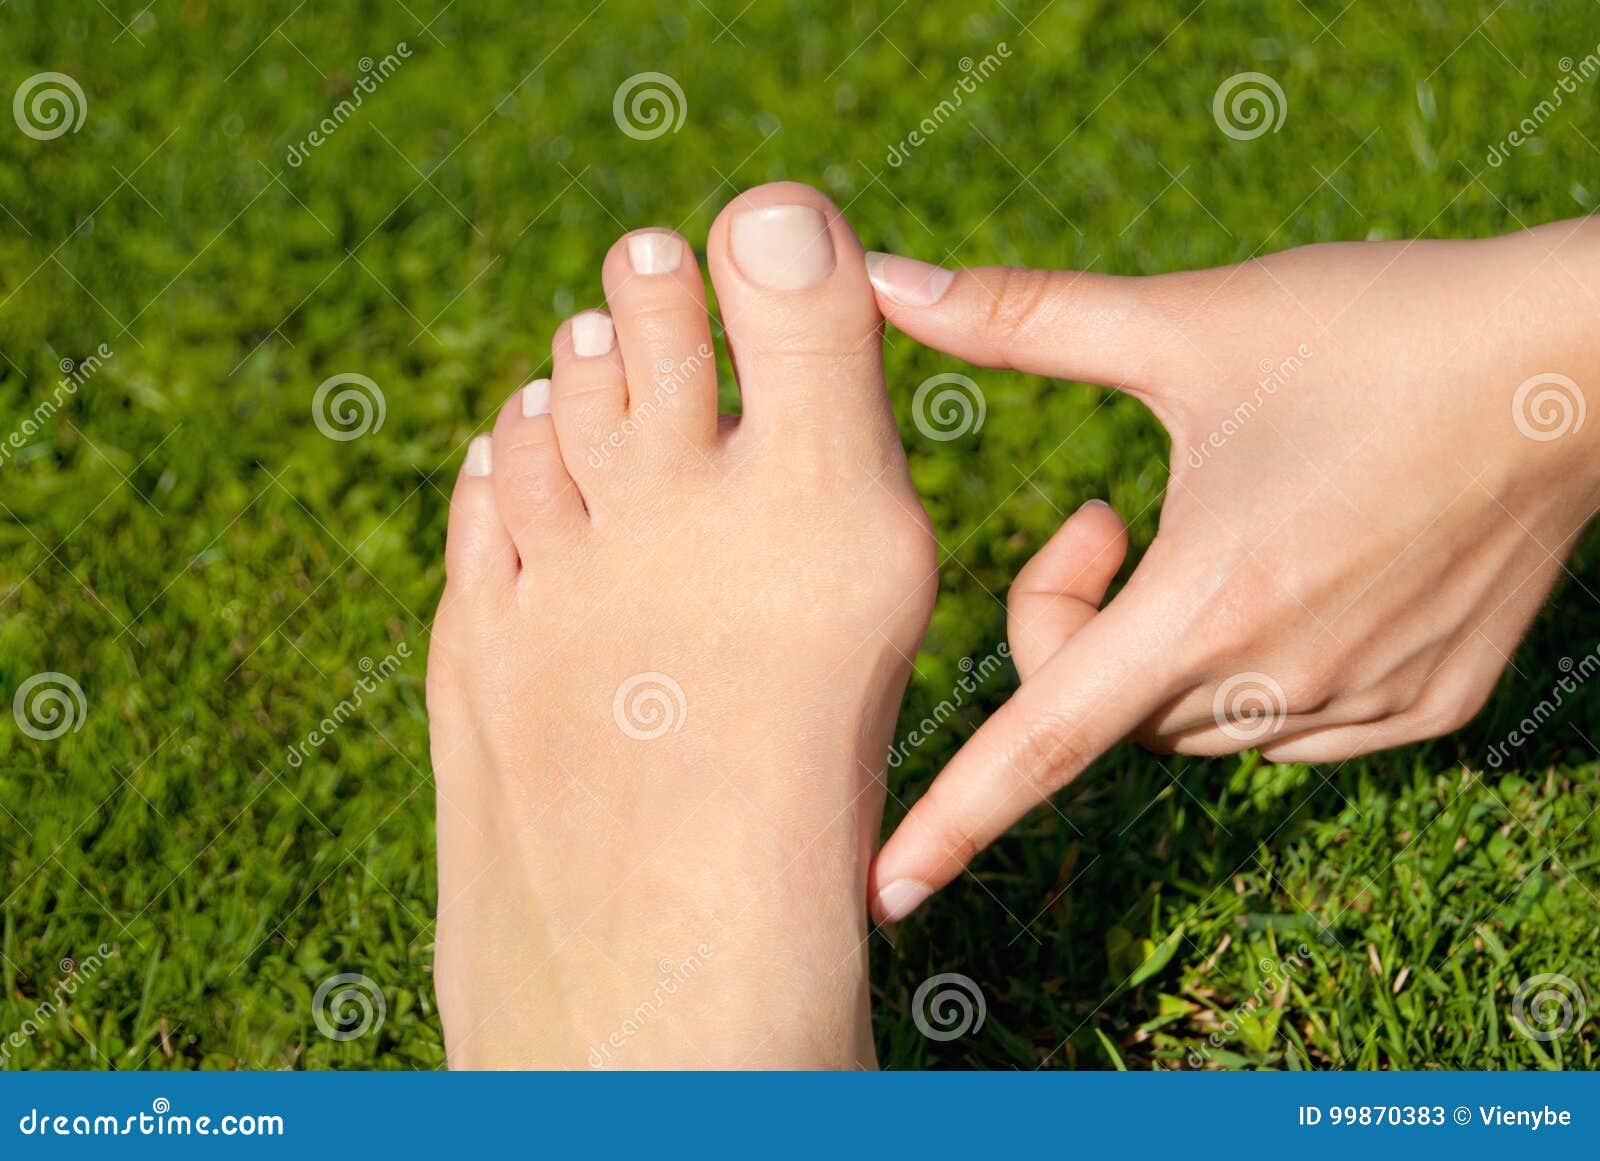 Hallux Valgus 囊炎在草背景的妇女脚库存图片 图片包括有valgus 囊炎在草背景的妇女脚